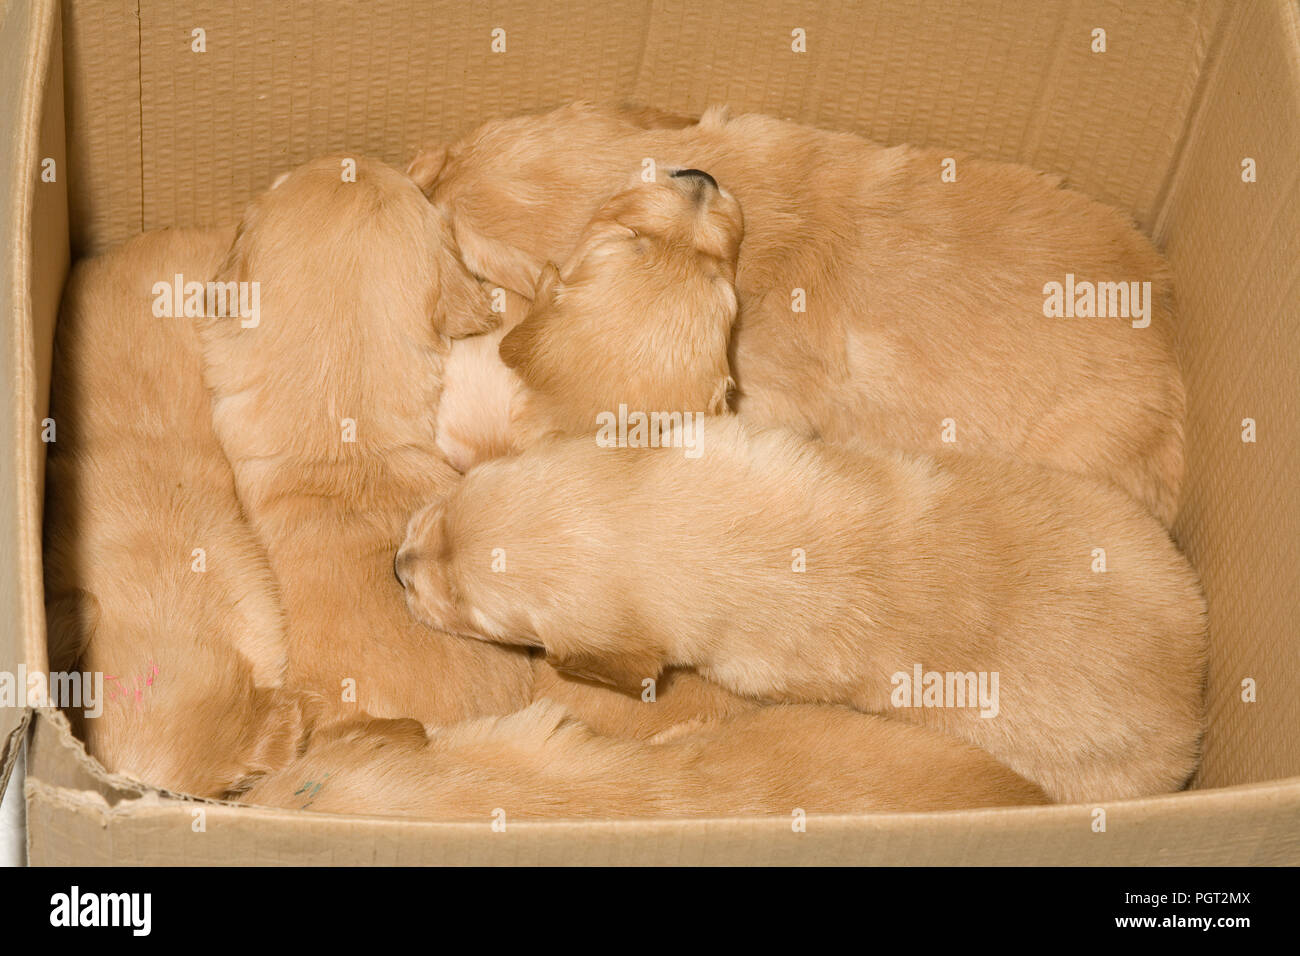 Camada de golden retriever cachorros momentáneamente colocados en una caja de cartón Foto de stock